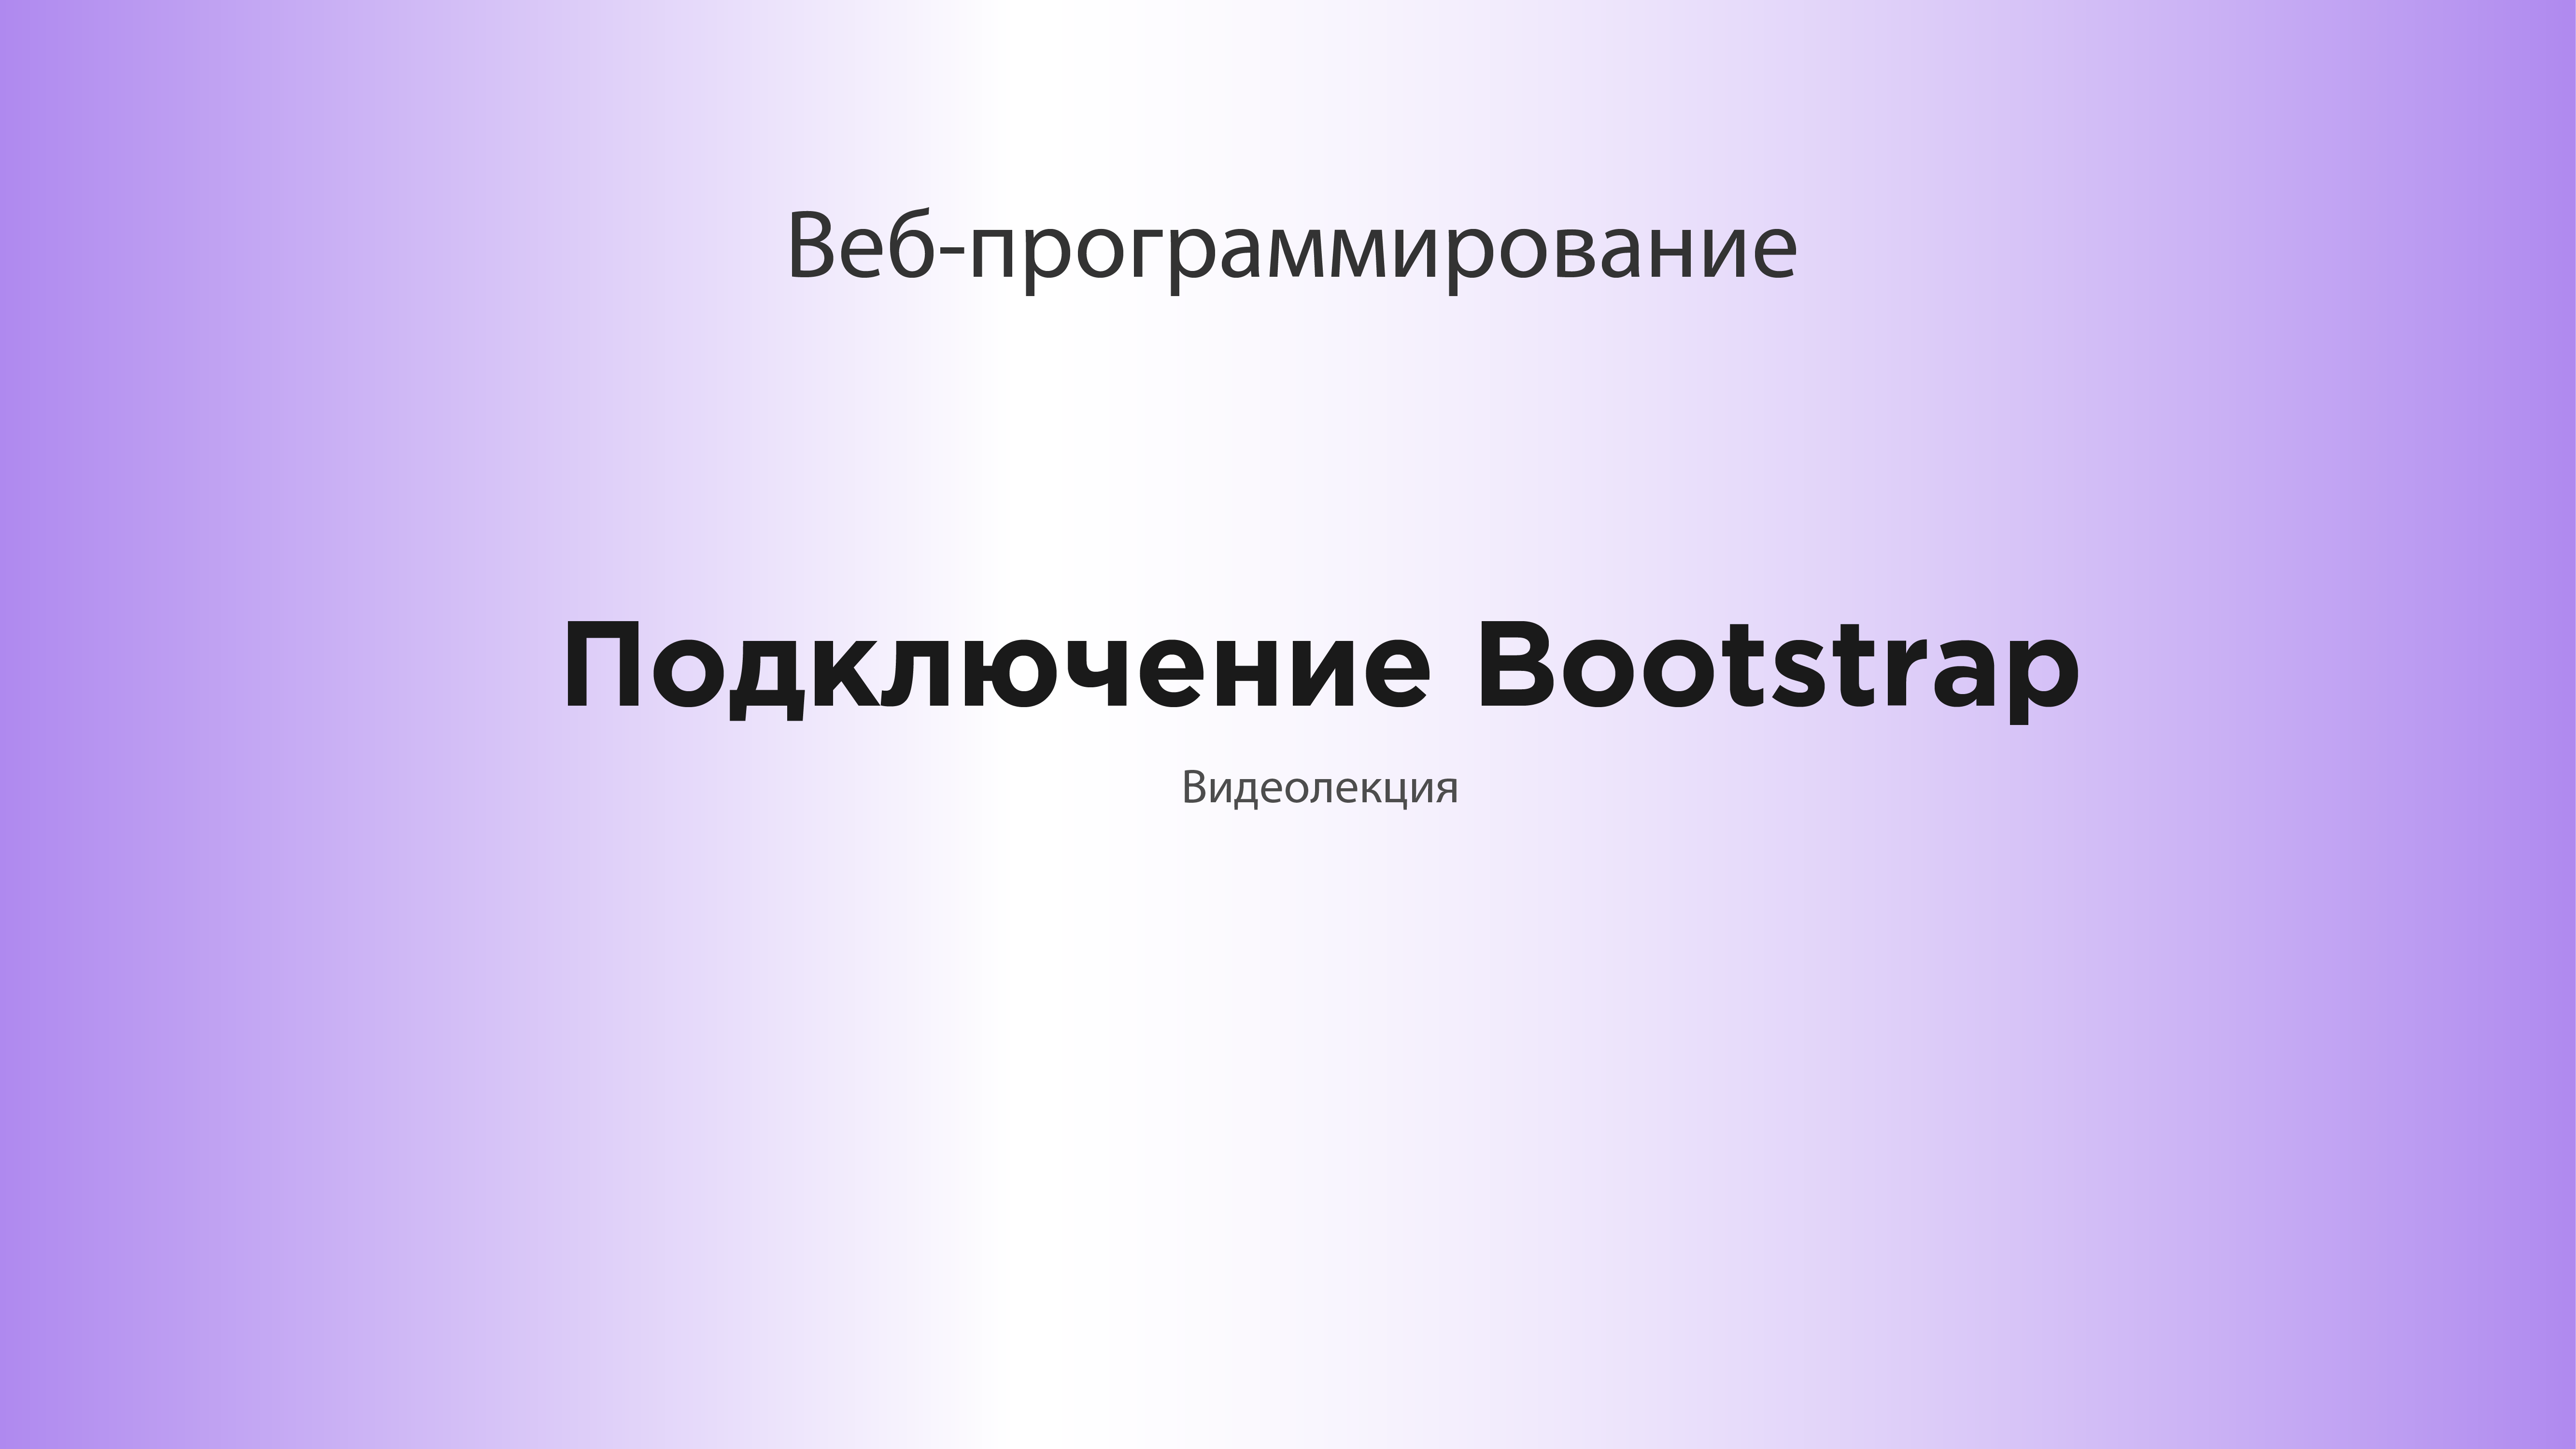 Подключение Bootstrap.mp4